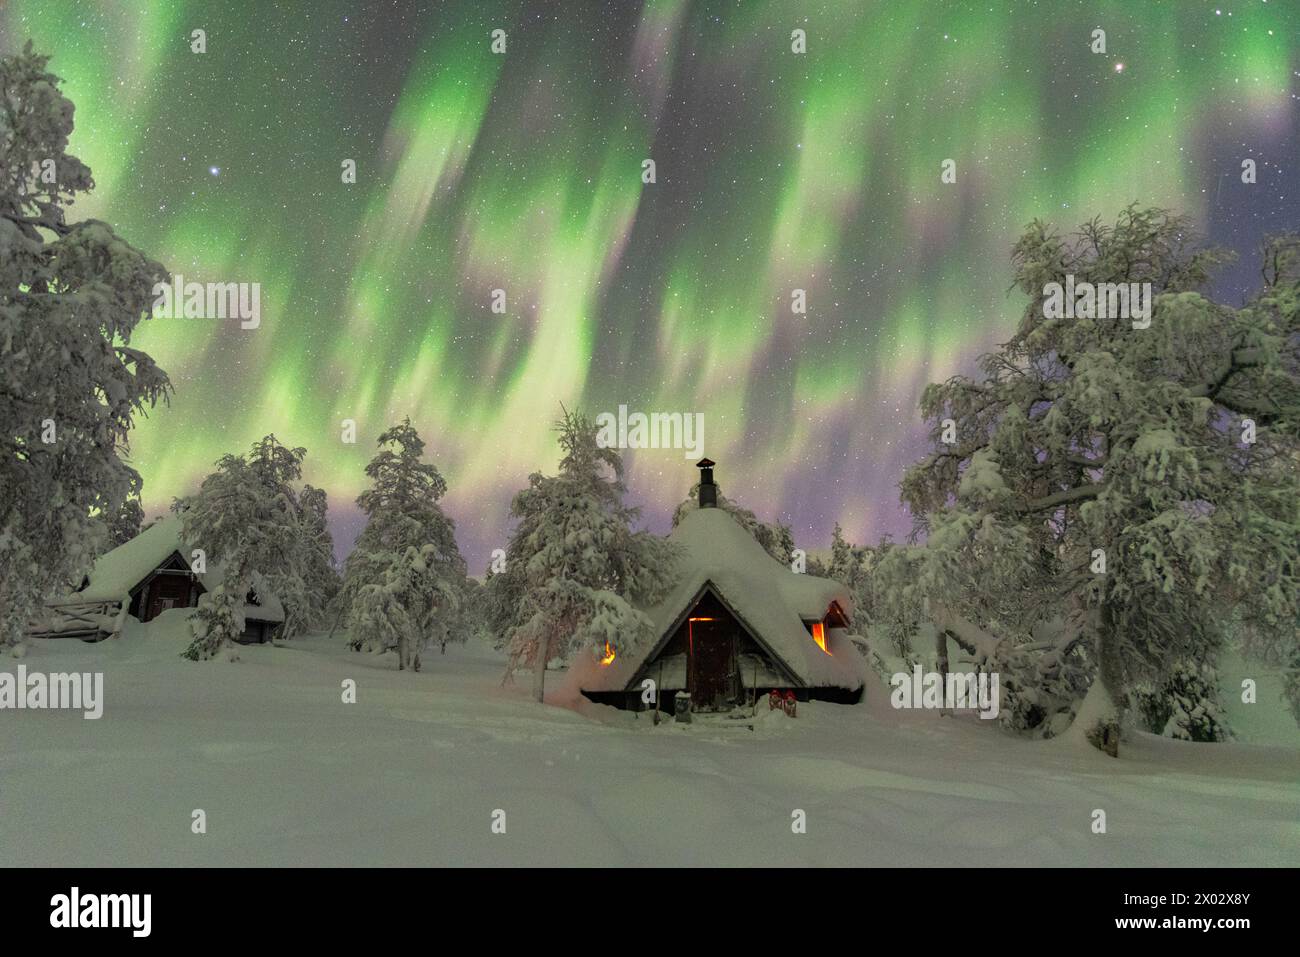 Vista invernale di una tipica capanna di legno illuminata dal fuoco nella foresta ghiacciata durante una tempesta dell'aurora boreale (Aurora Boreale), Lapponia finlandese, Finlandia Foto Stock